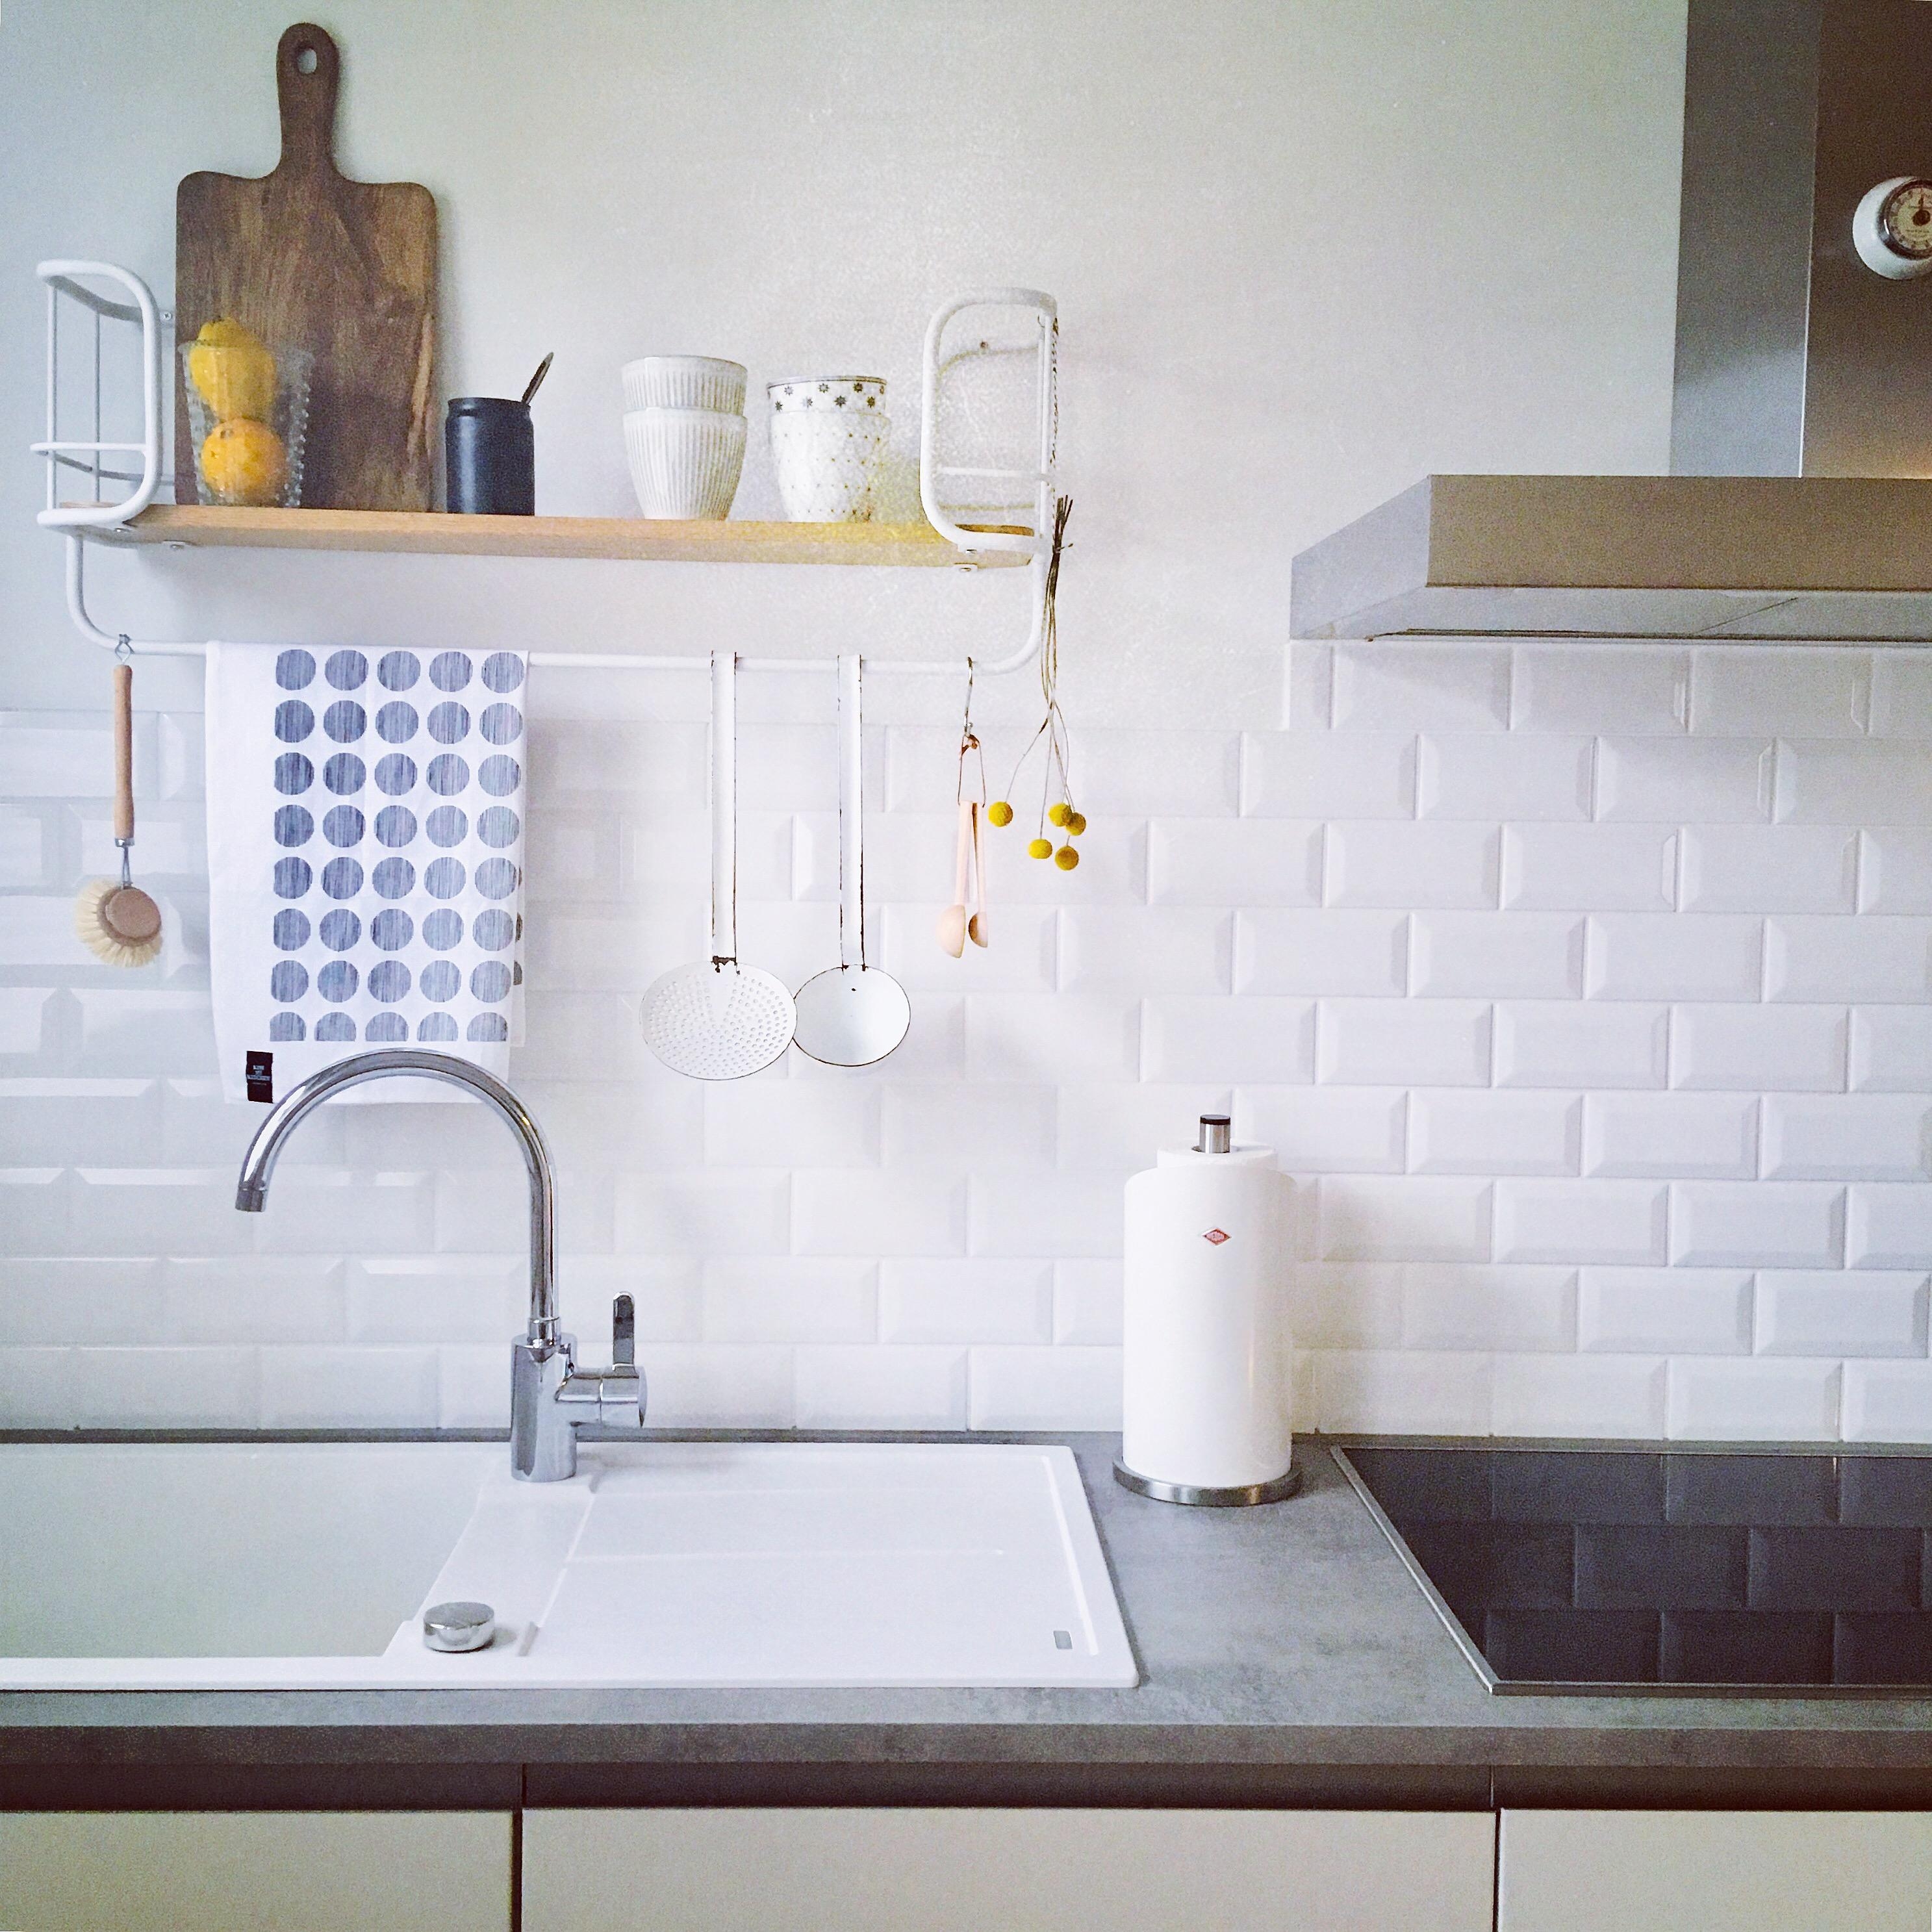 #whitekitchen #kitchenlove #küchenliebe 💕